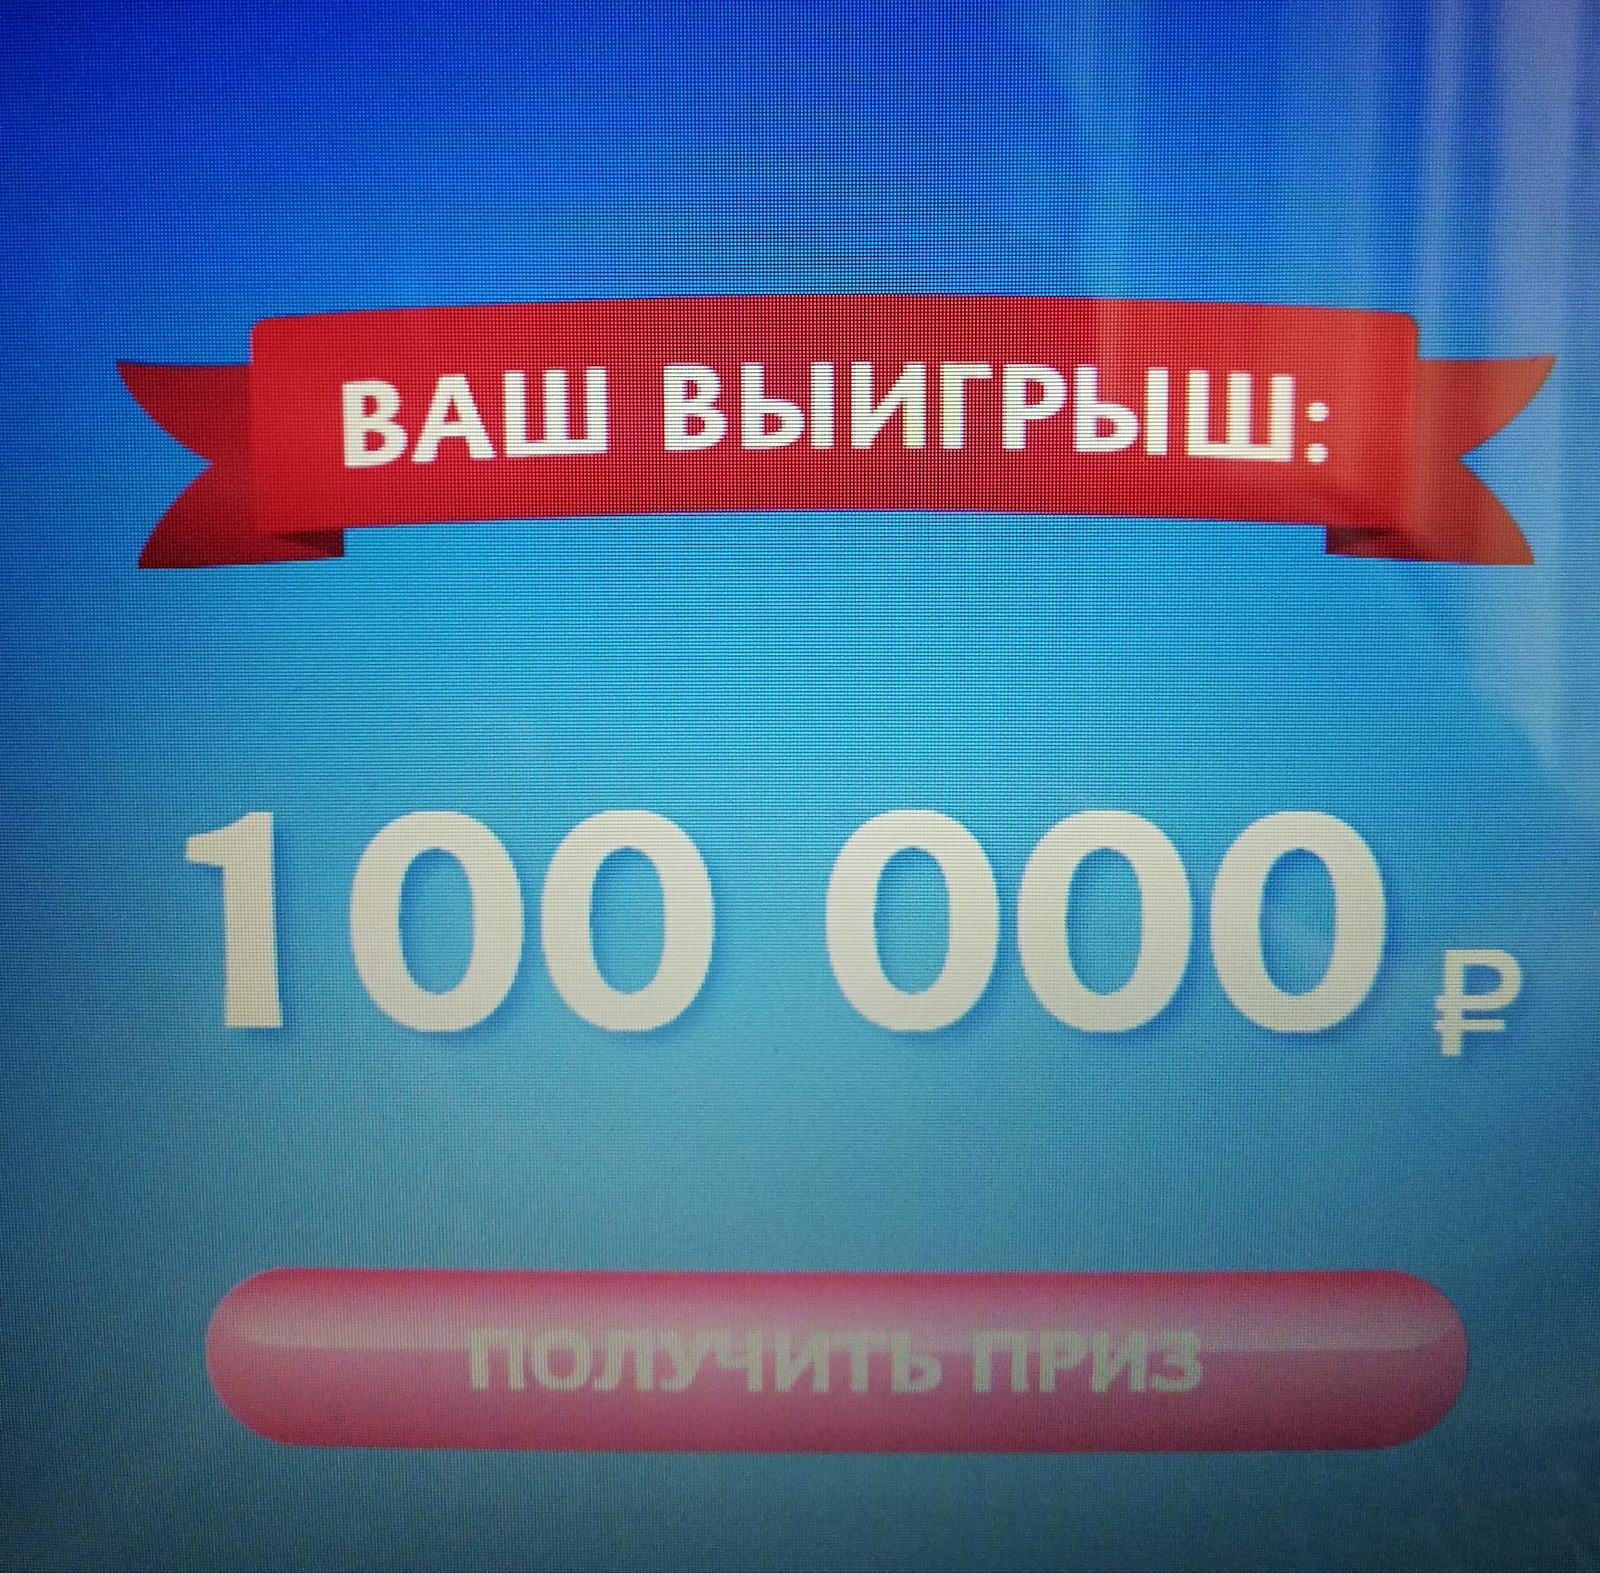 Сколько осталось до 100 призов стар. Вы выиграли 100 рублей. Приз 100000 рублей. Приз 100 рублей. Вы выйграли милион рублей.